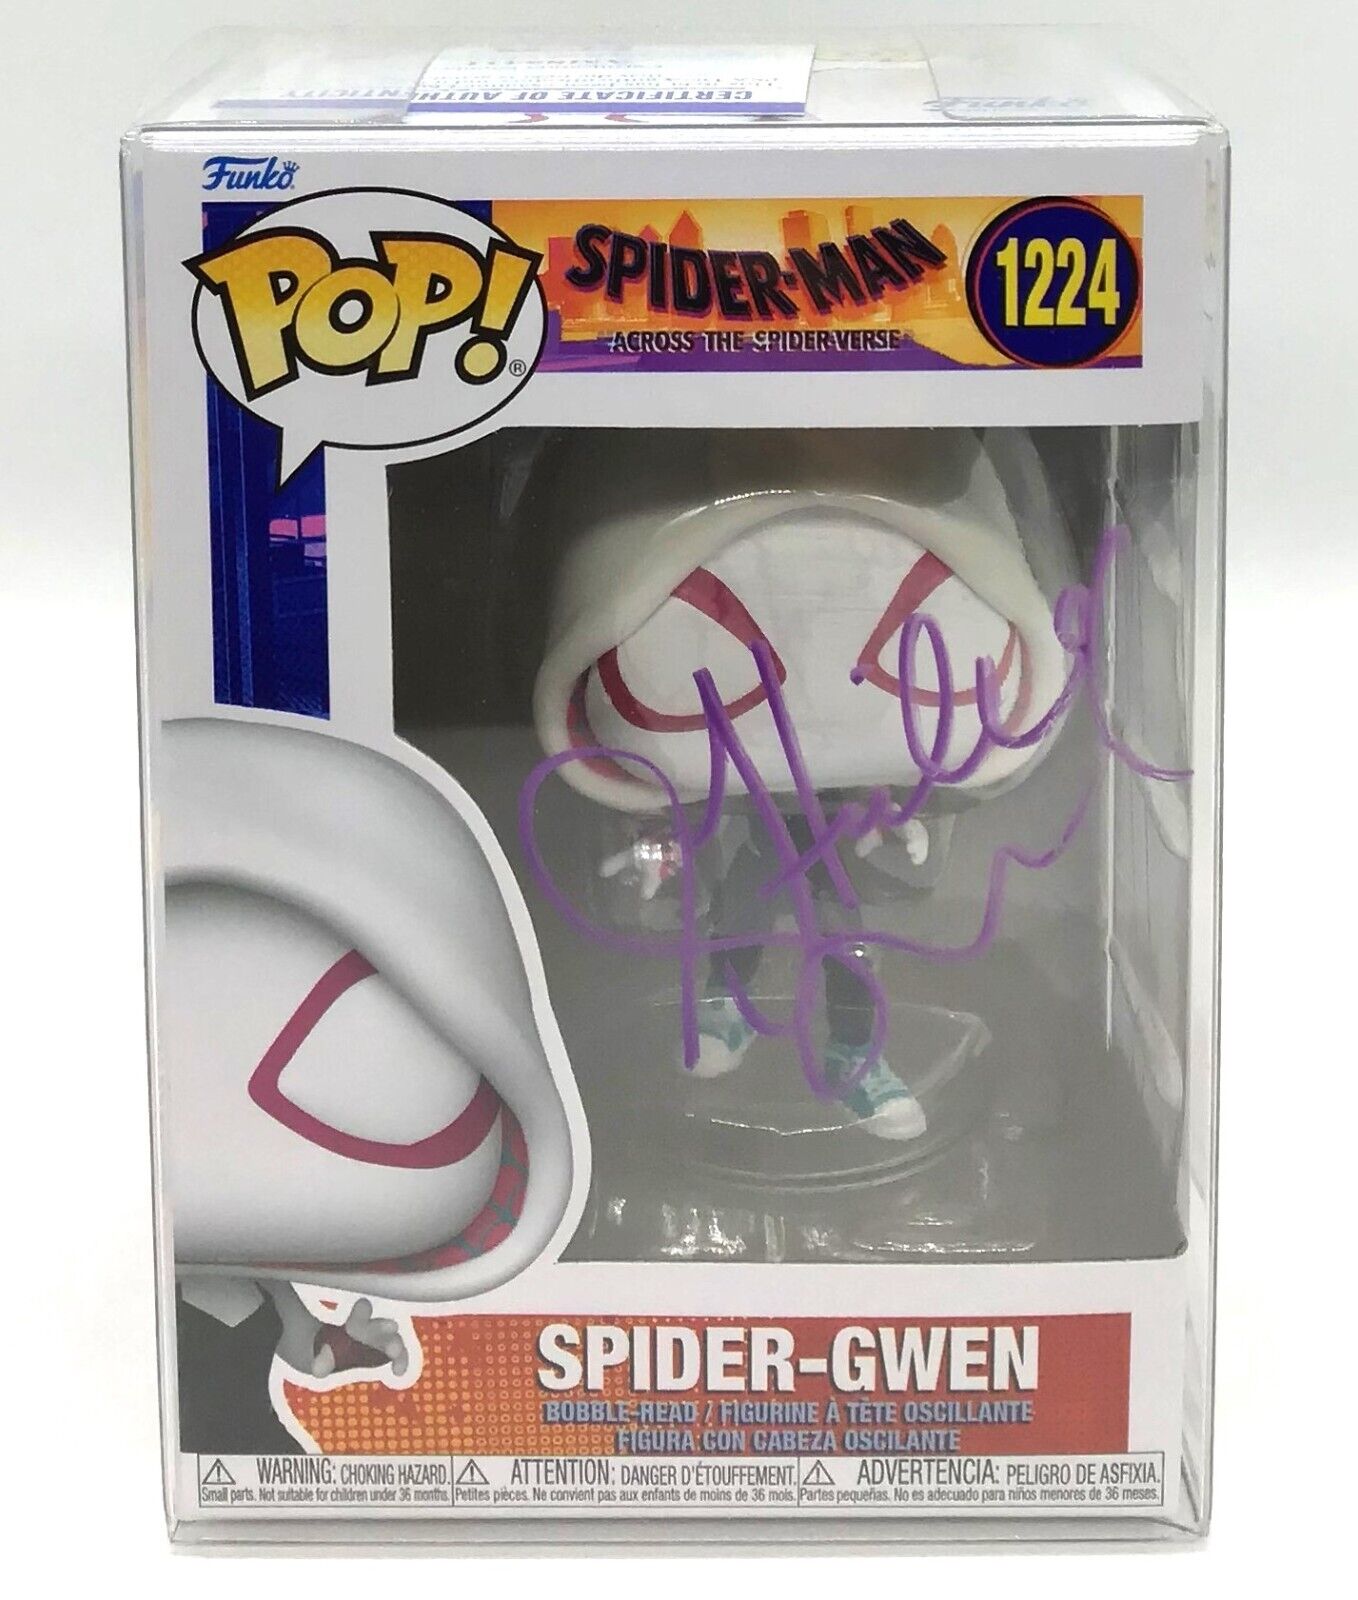 Funko Pop Spider-Man ATSV Spider-Gwen #1224 SIGNED by Hailee Steinfeld PSA DNA